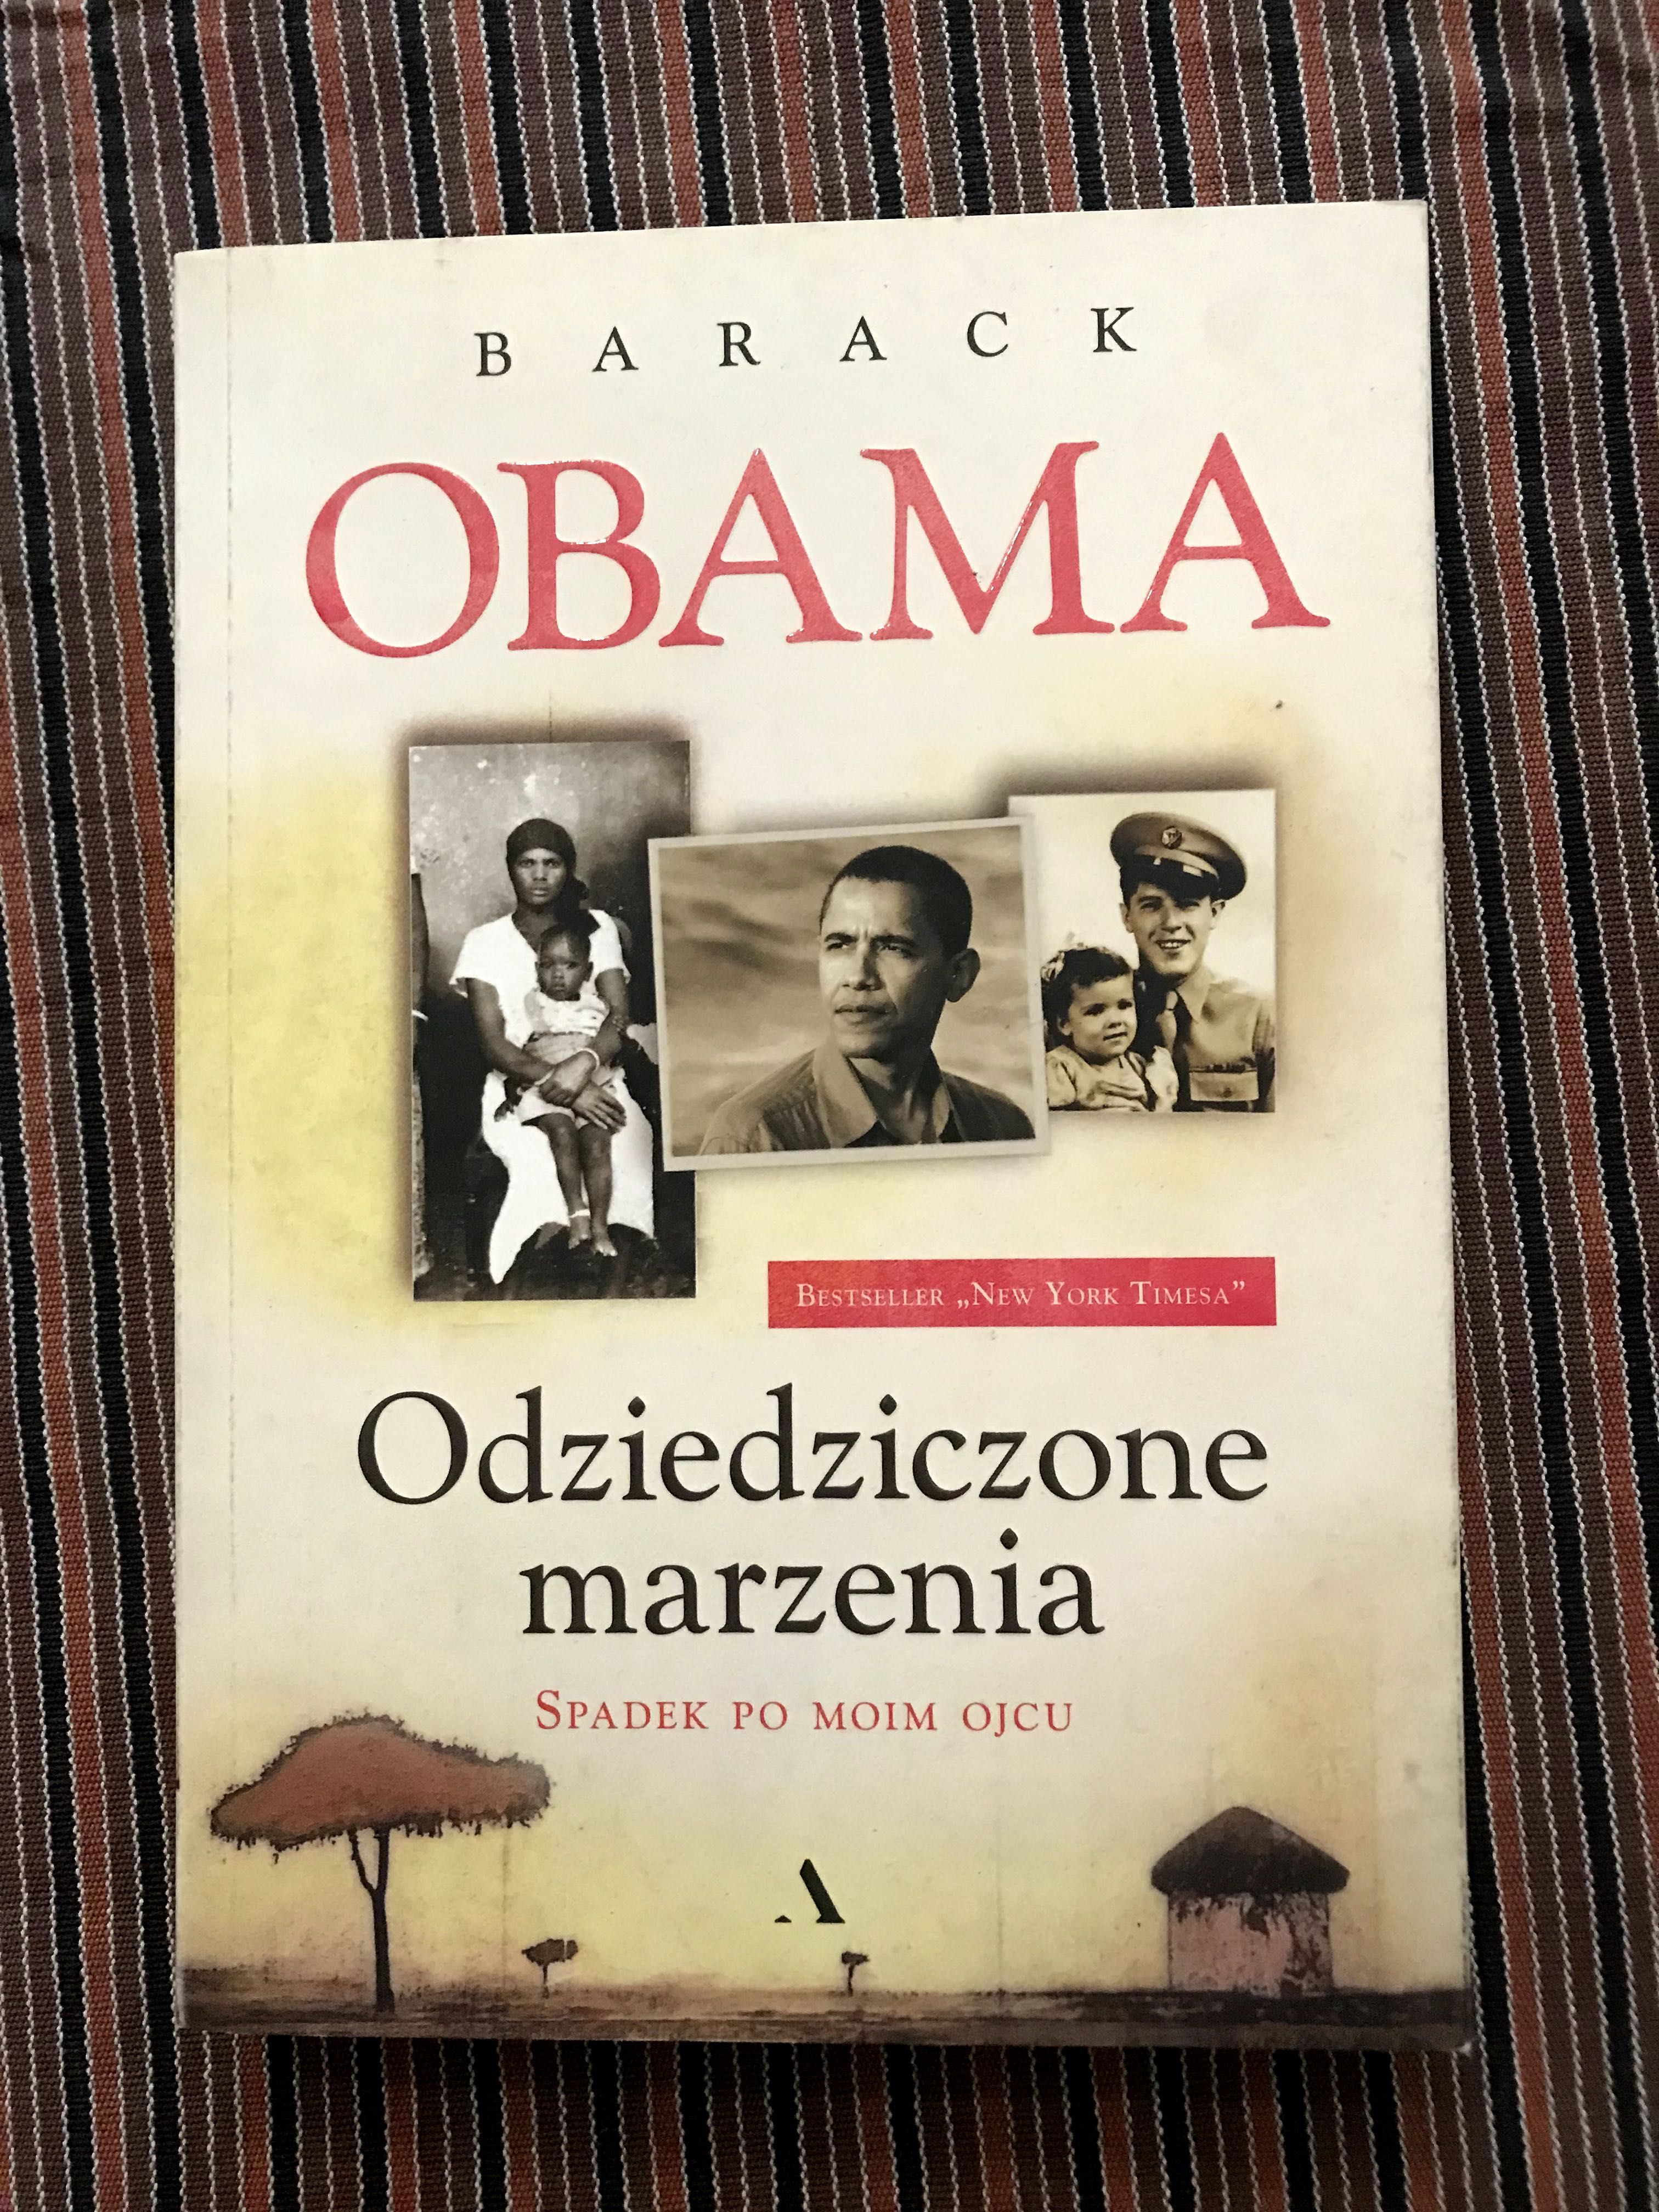 Barack Obama, Odziedziczone marzenia.